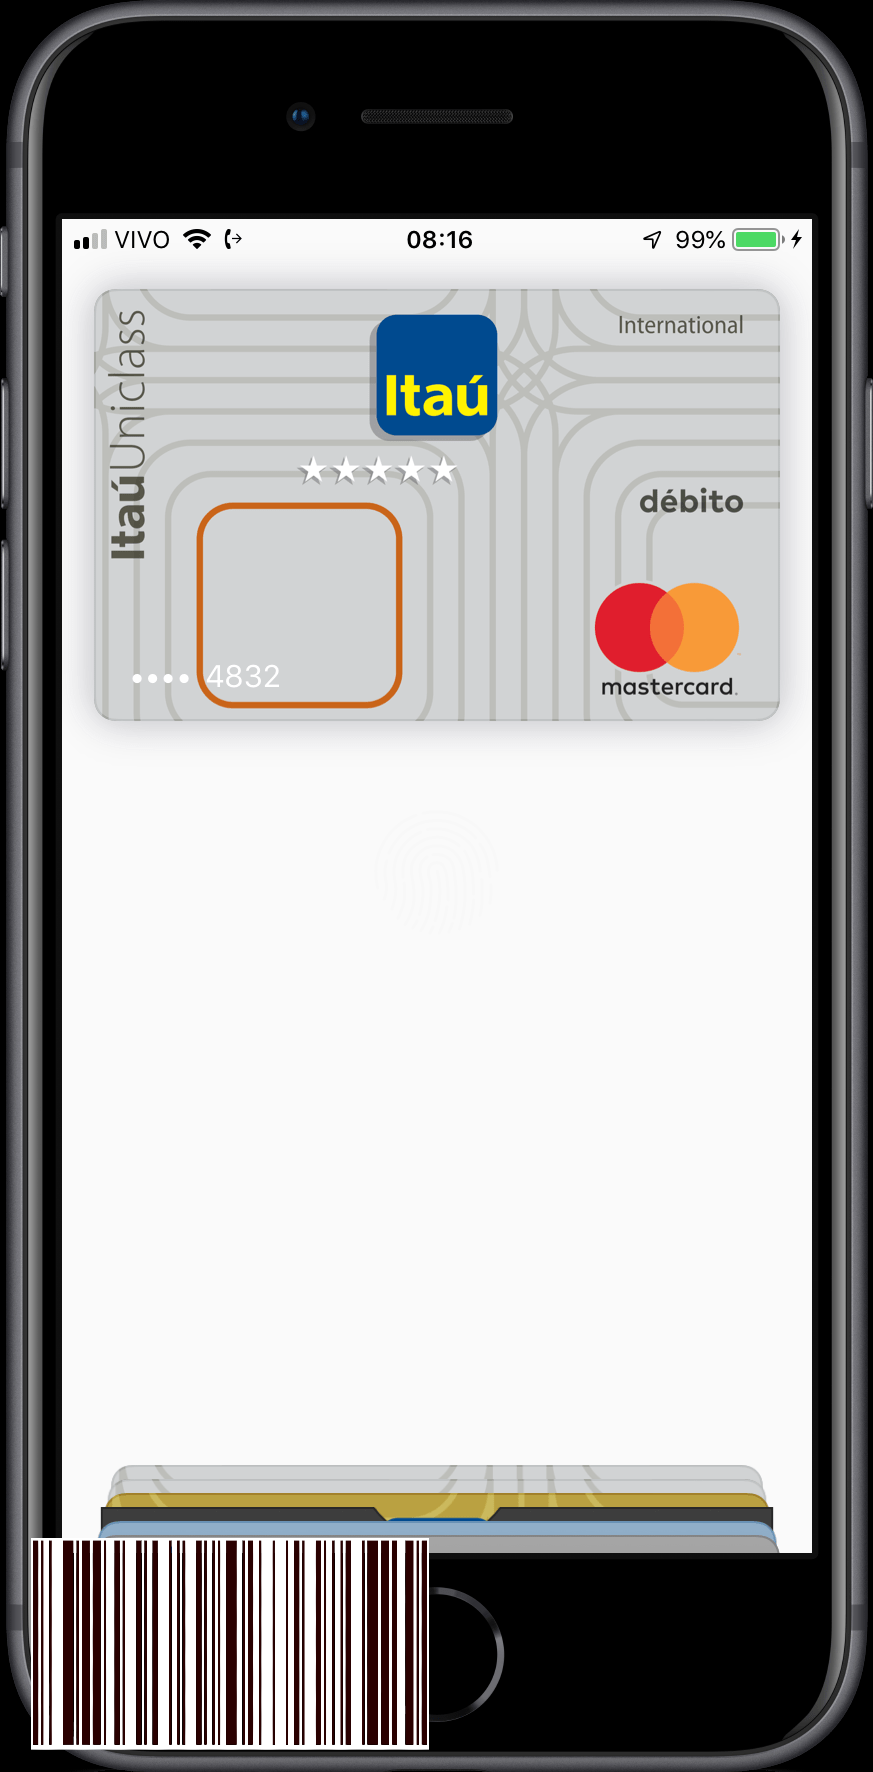 بطاقات الخصم من Ita على Apple Pay